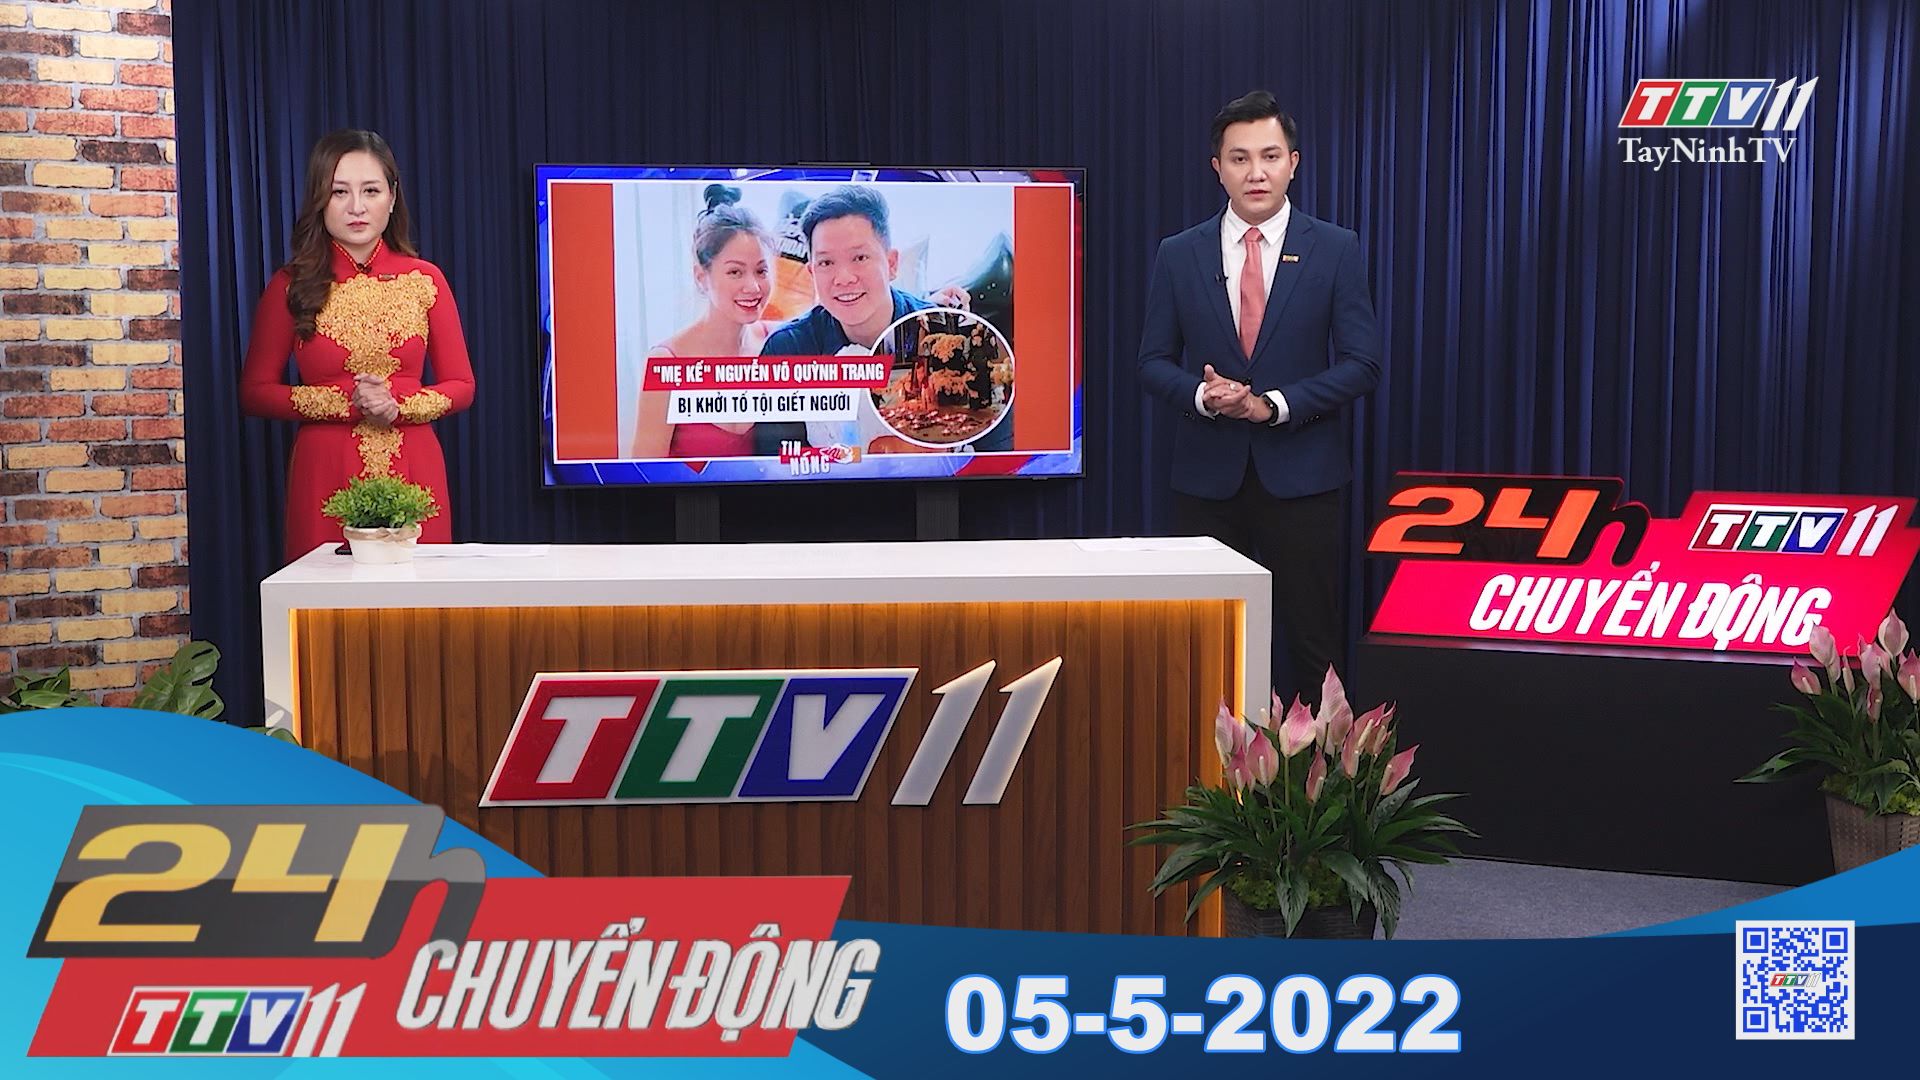 24h Chuyển động 05-5-2022 | Tin tức hôm nay | TayNinhTV